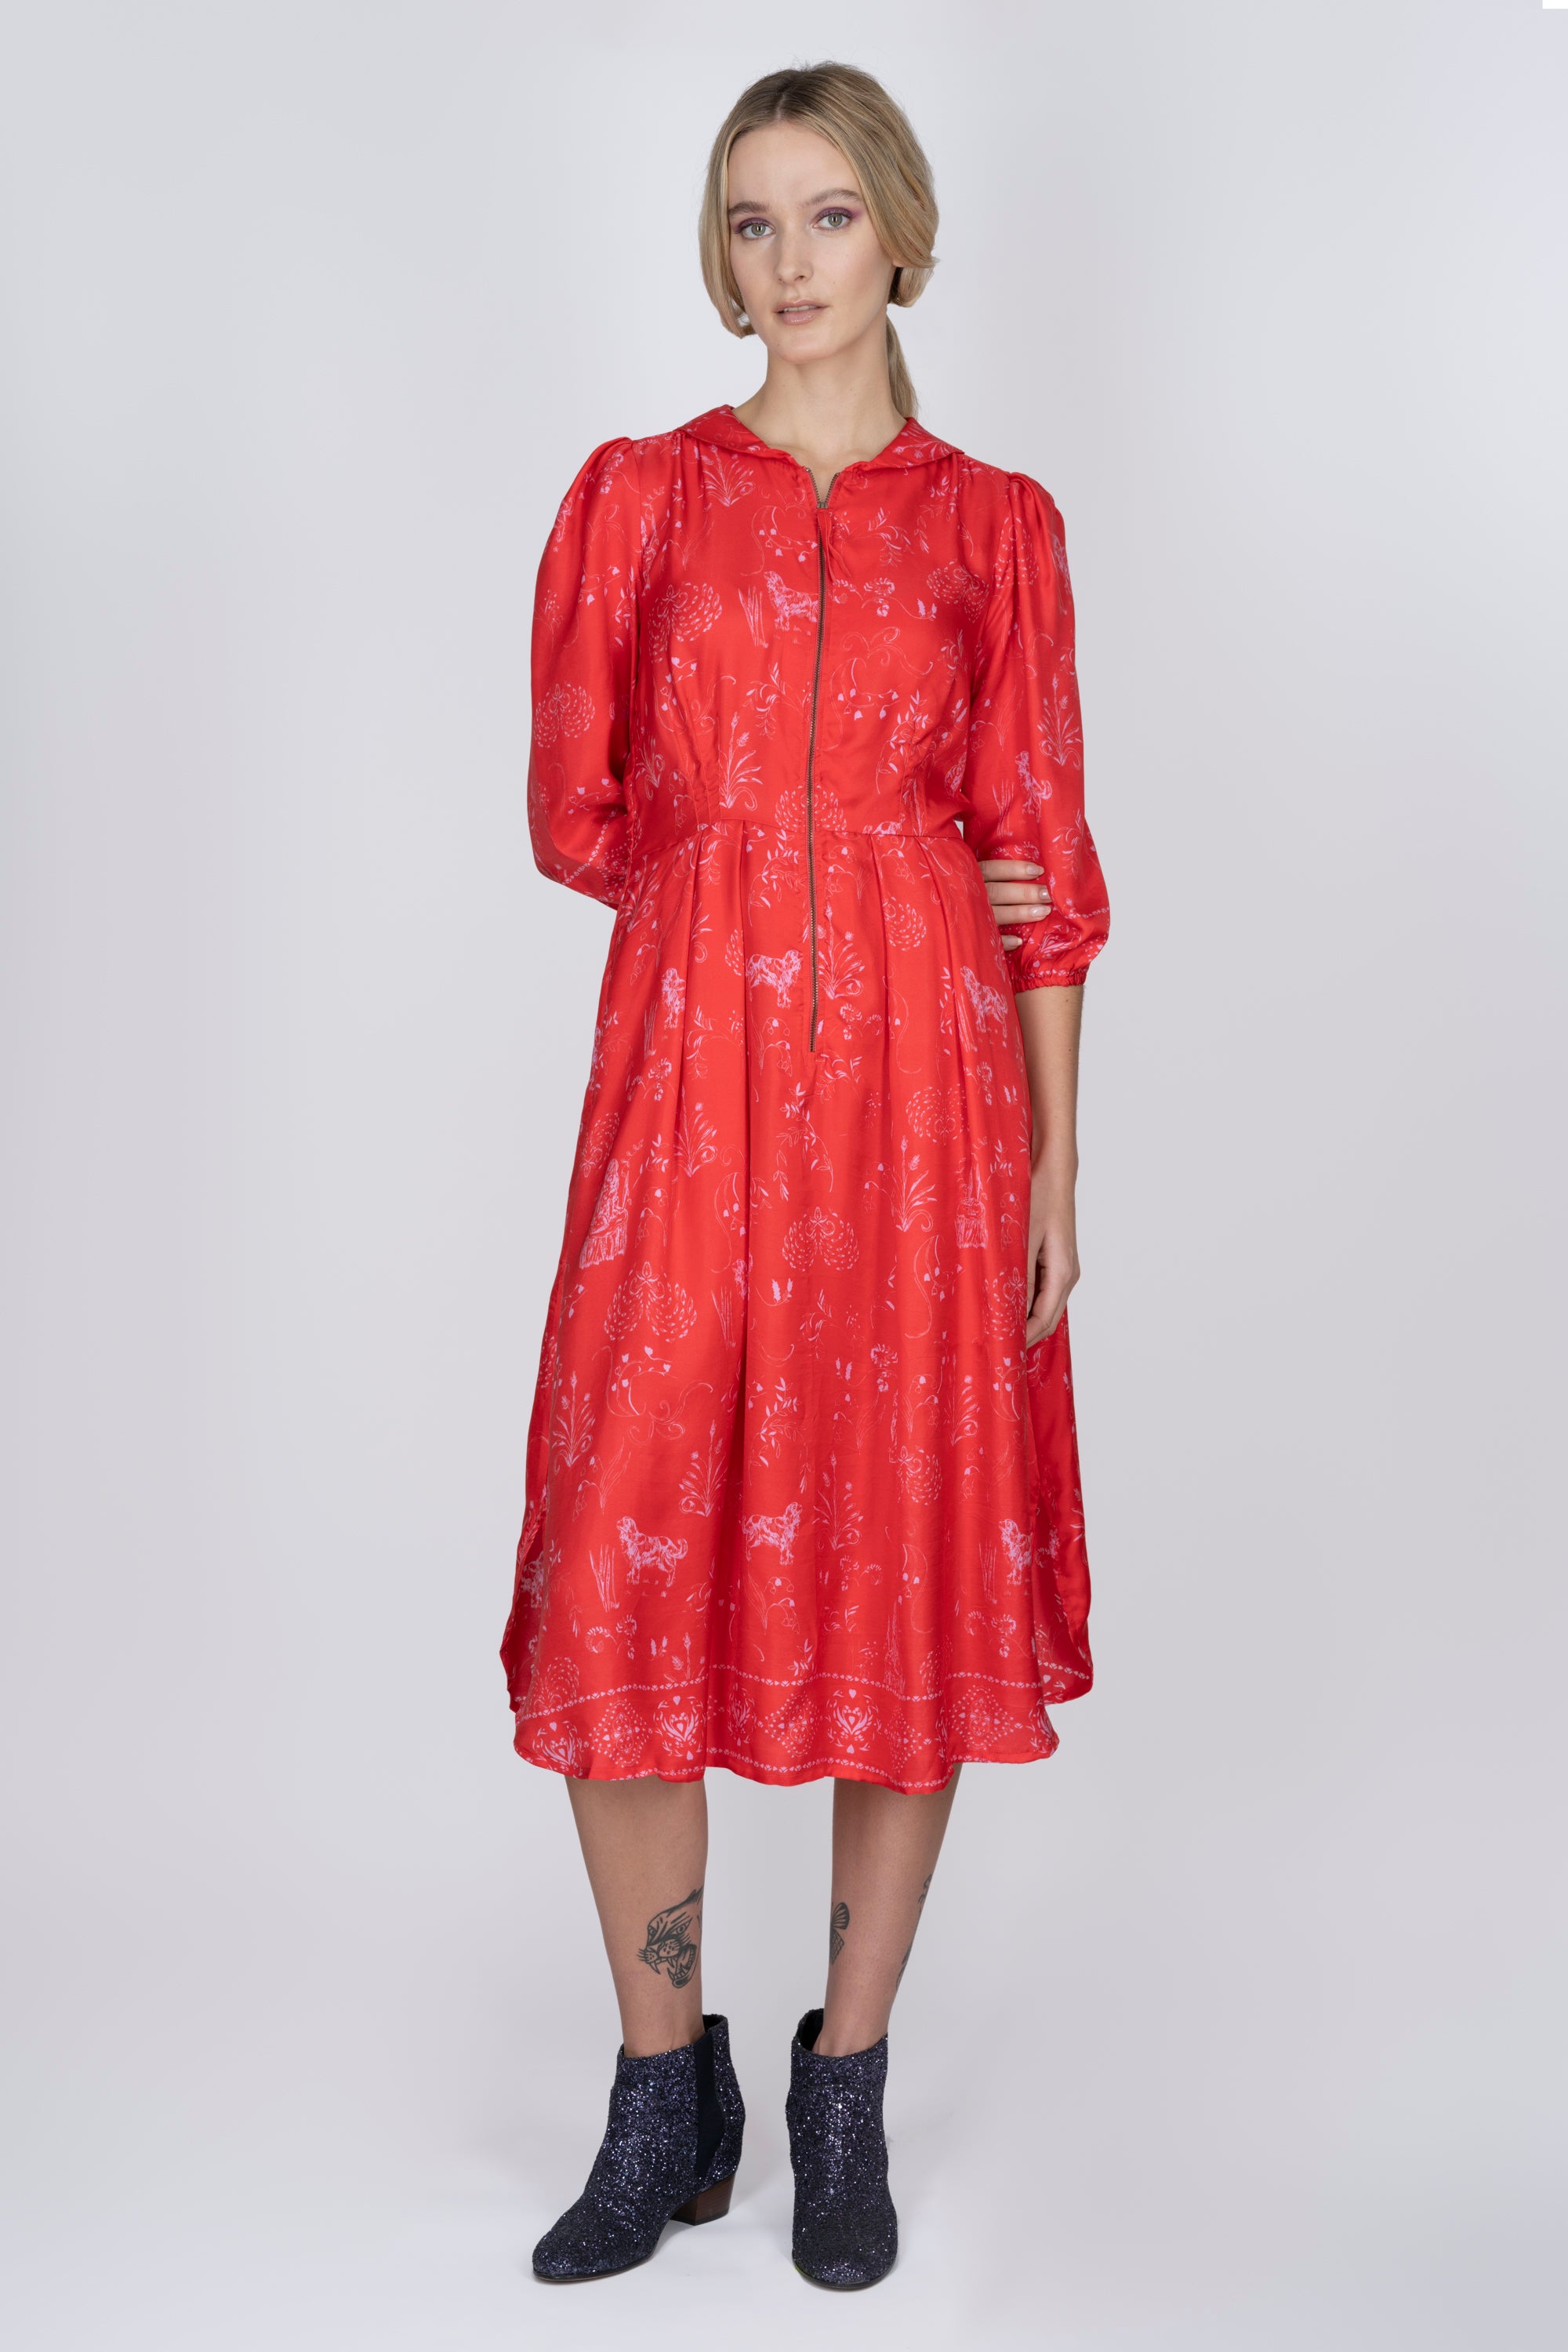 Silk Sonnet Dress in Red Joy Print